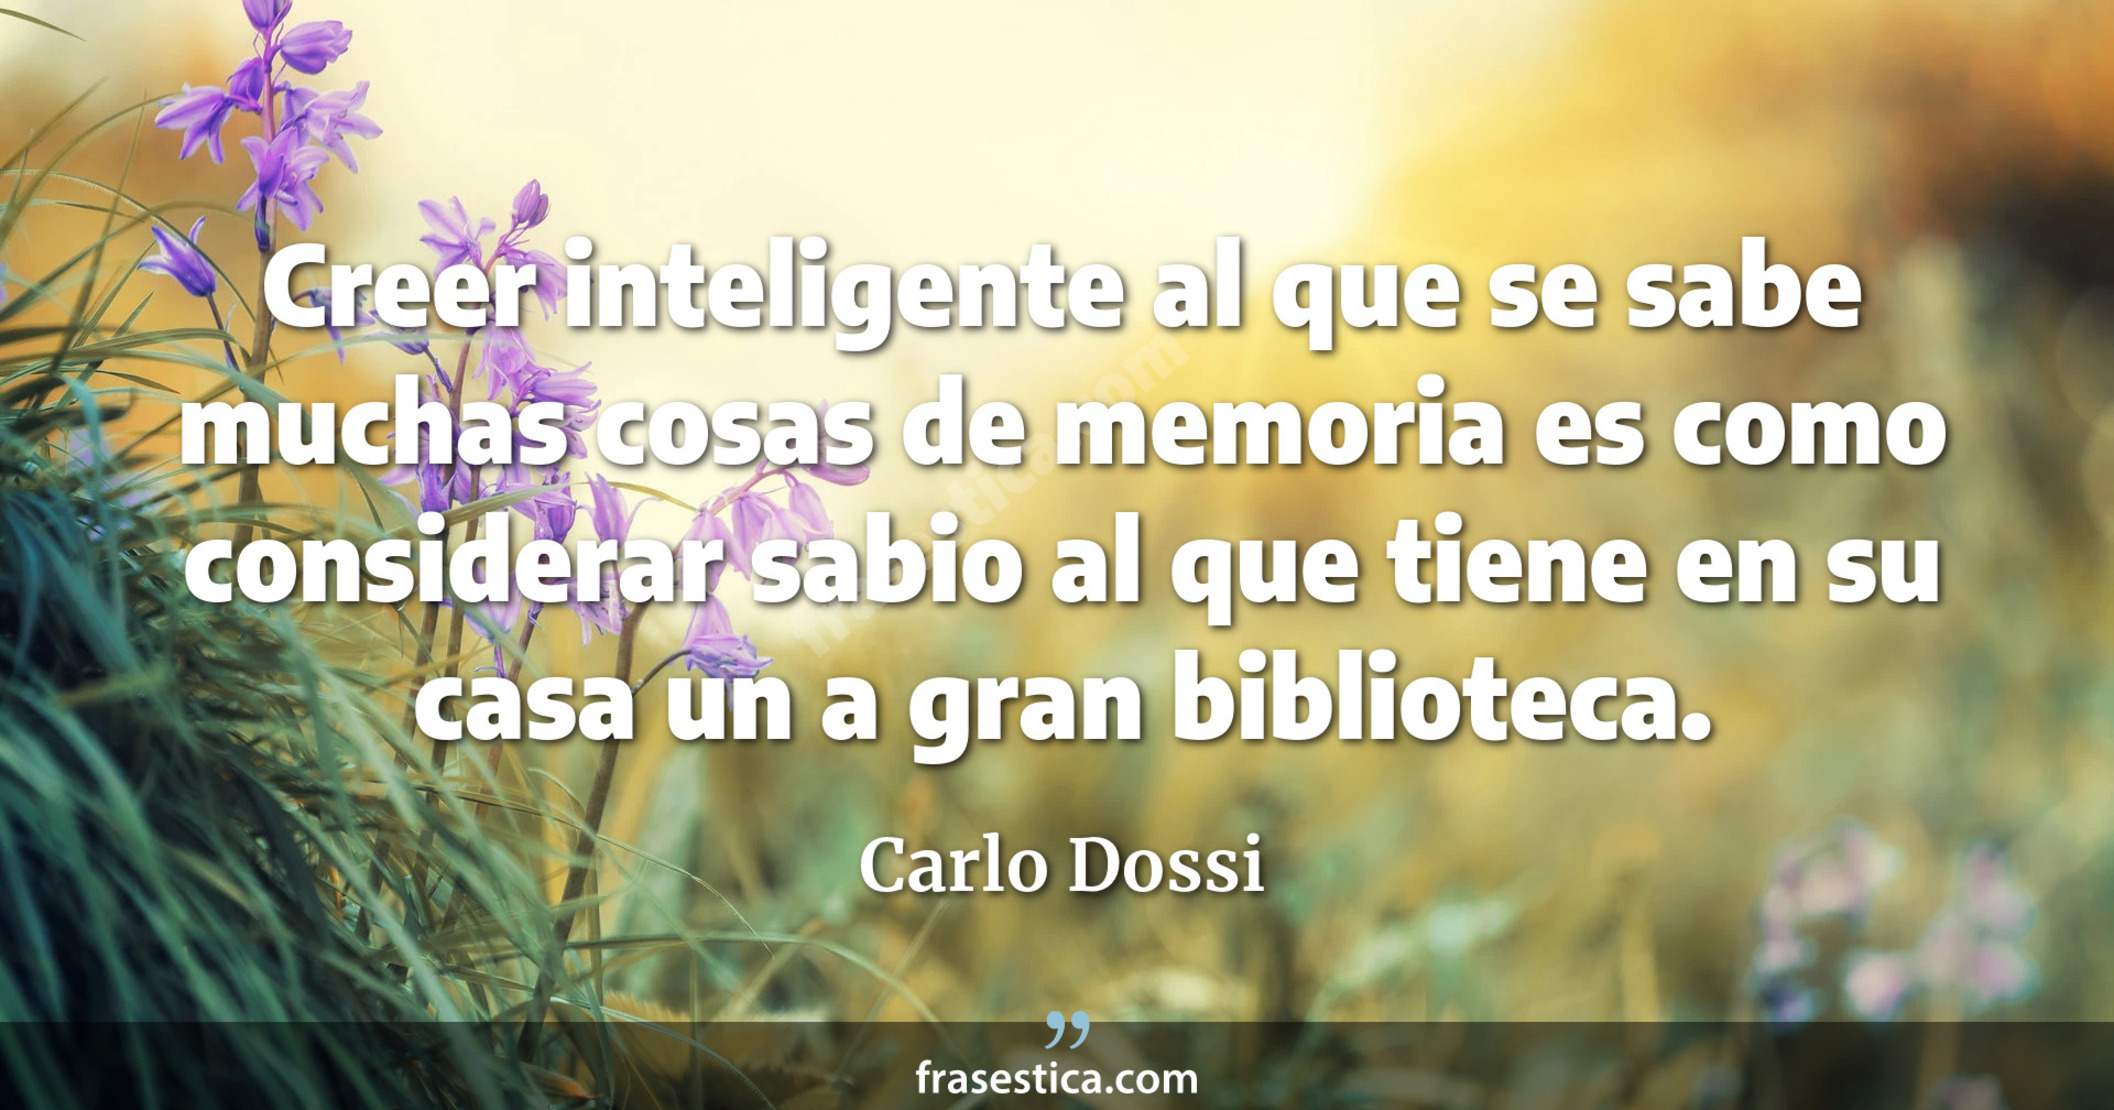 Creer inteligente al que se sabe muchas cosas de memoria es como considerar sabio al que tiene en su casa un a gran biblioteca. - Carlo Dossi